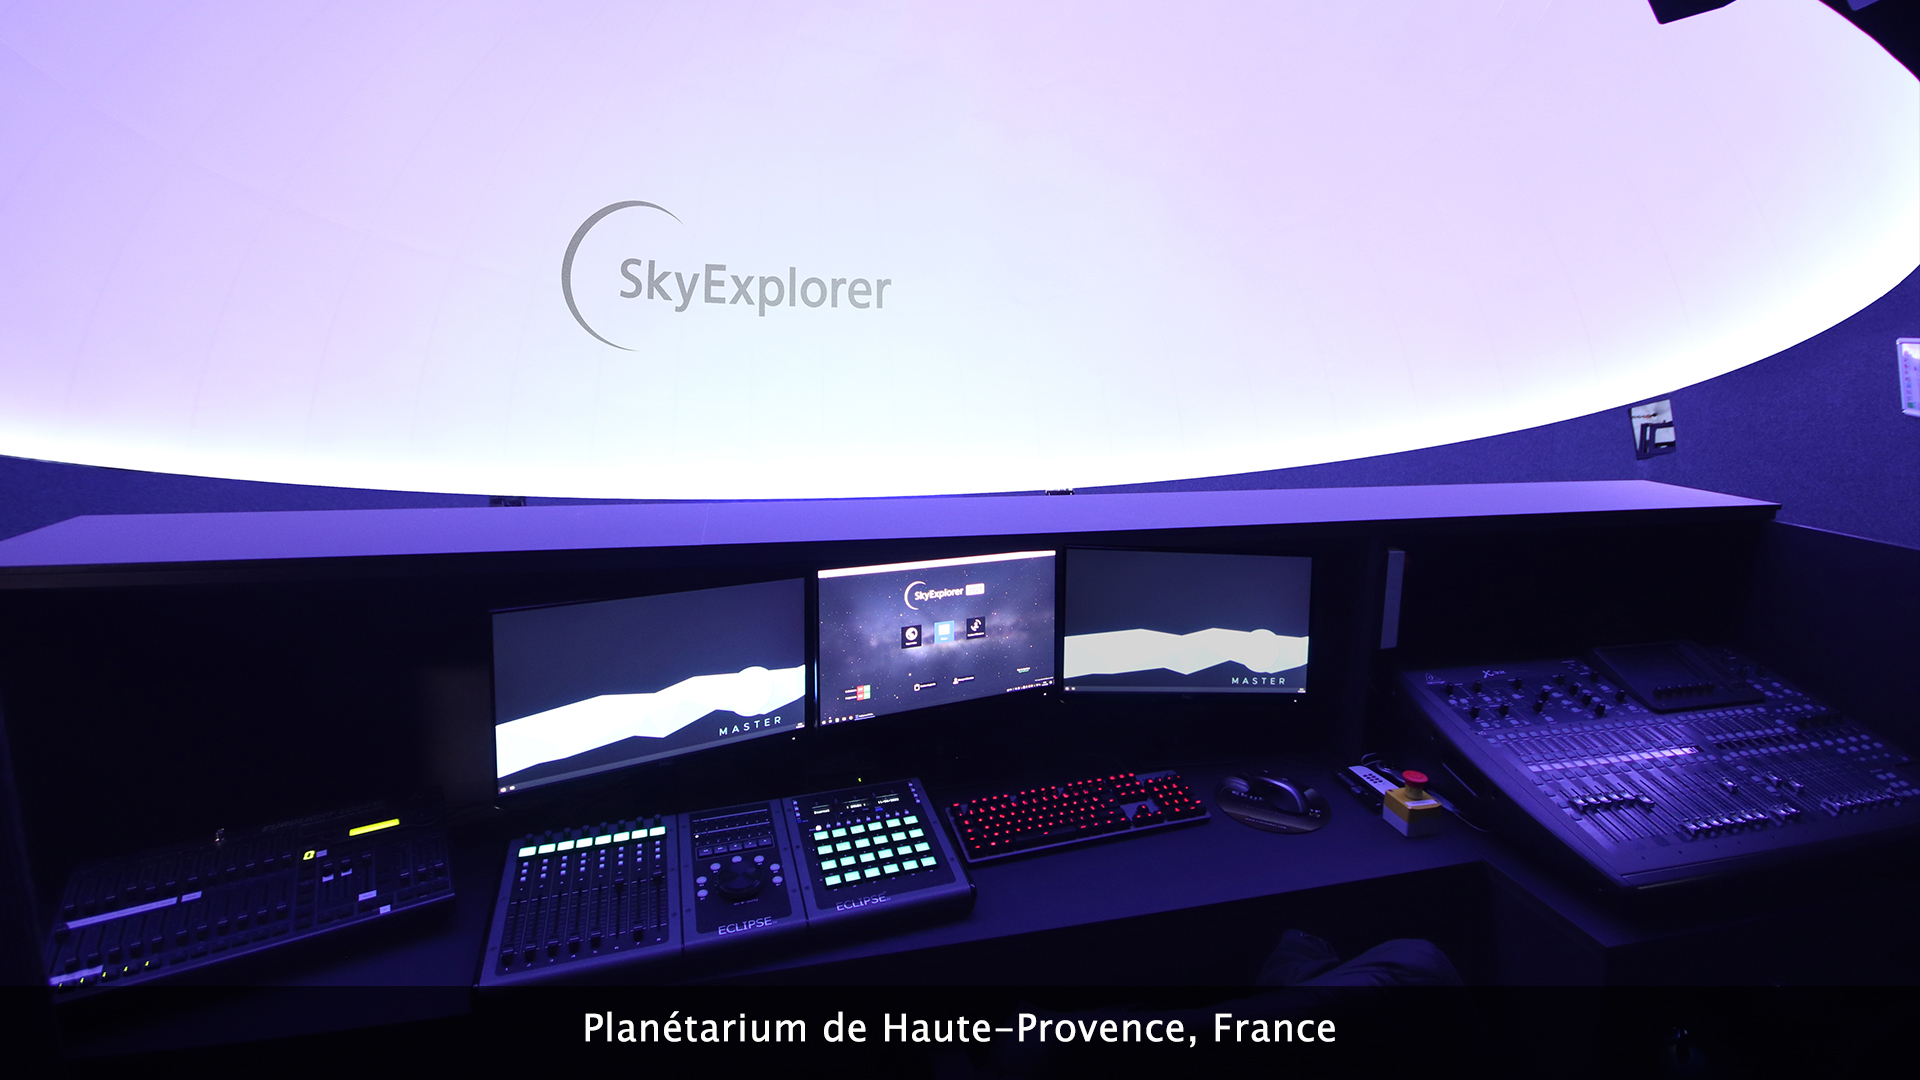 Planétarium de Haute-Provence, France